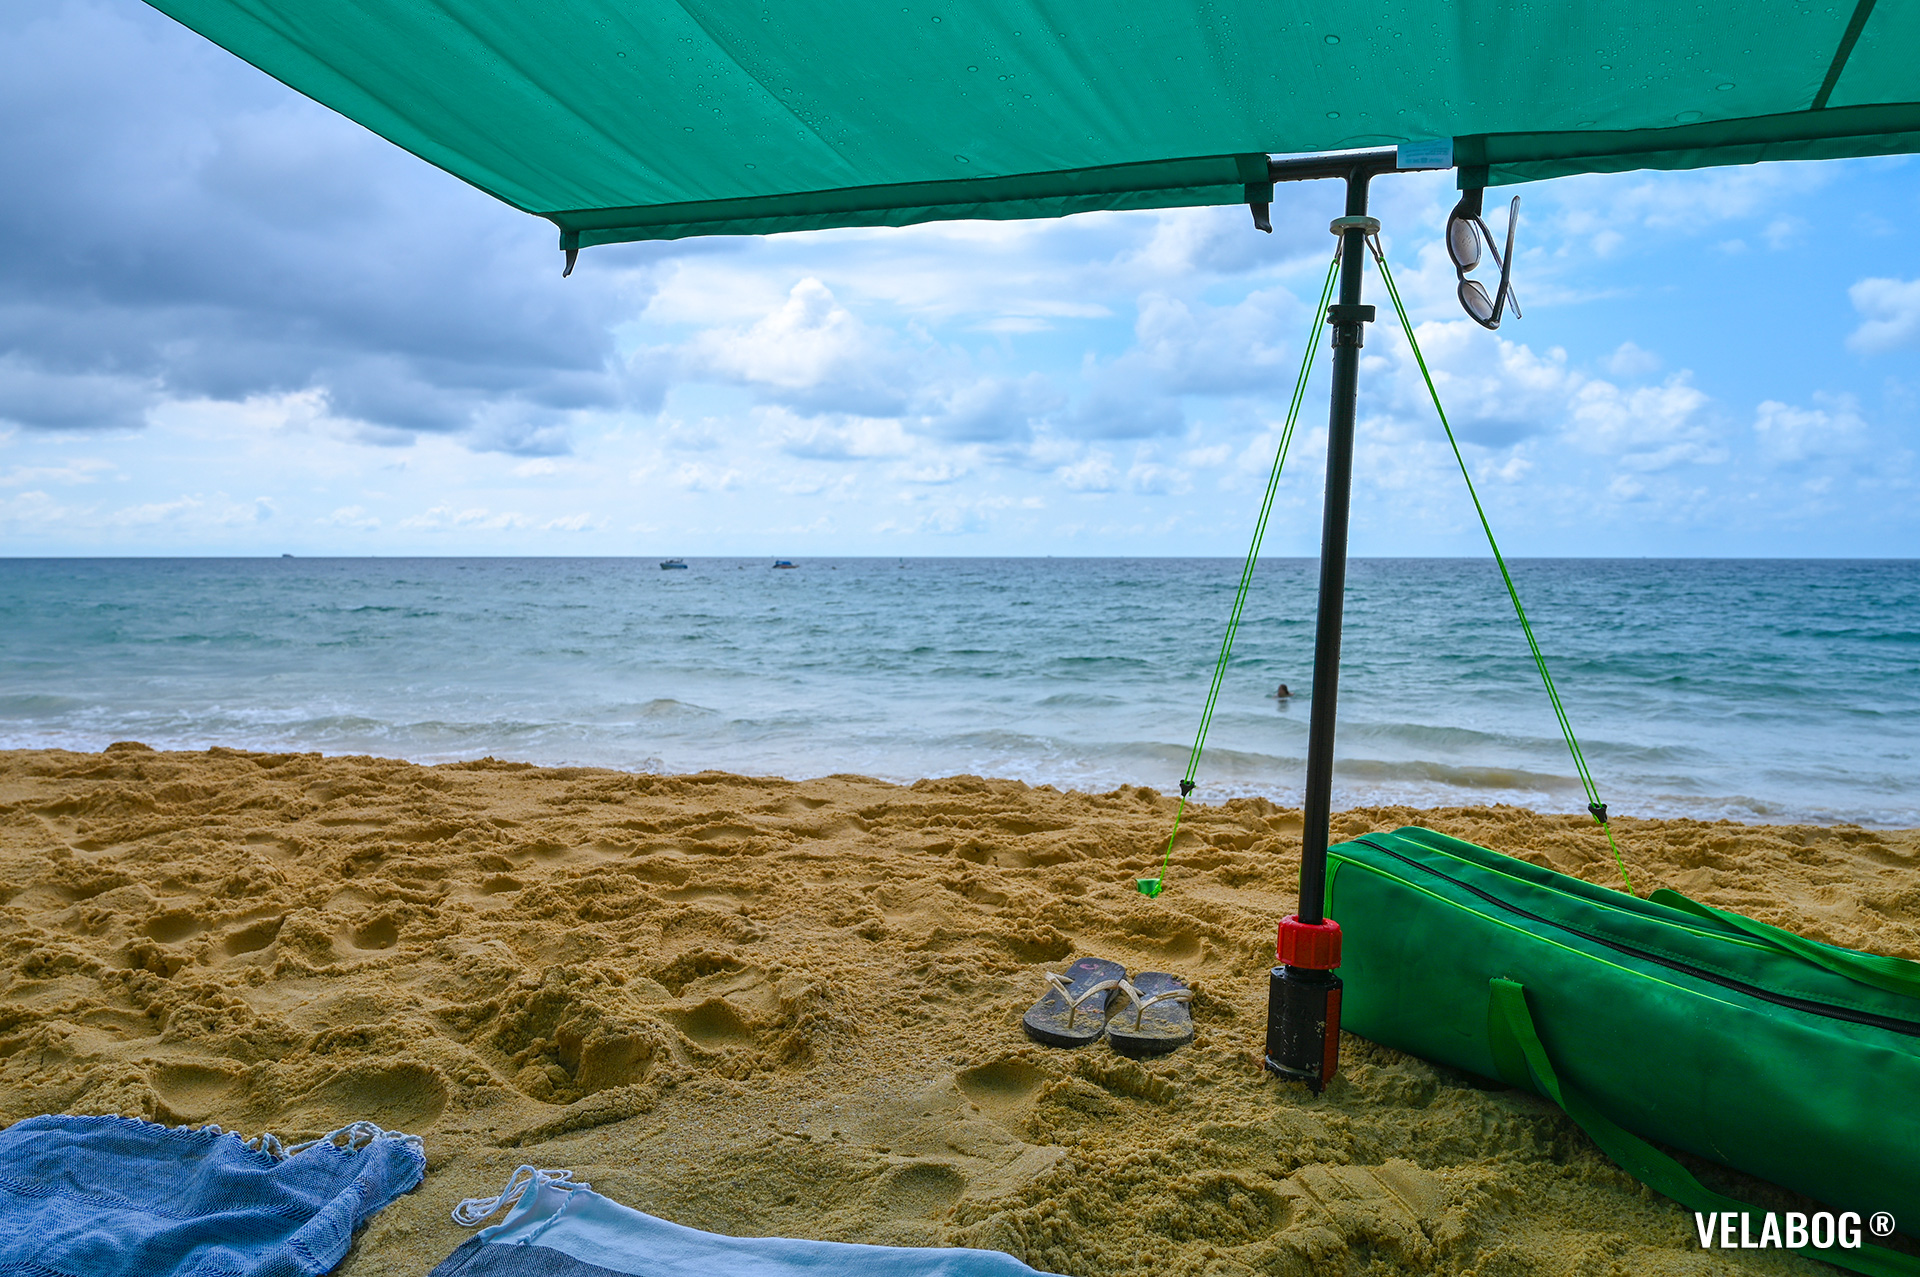 Солнечный парус Velabog «Breeze» зелёный на пляже в Таиланде во время дождя. Лучшее укрытие на пляже. Вариант установки при слишком слабом или порывистом ветре или если ветра нет. Вид снизу, детали.